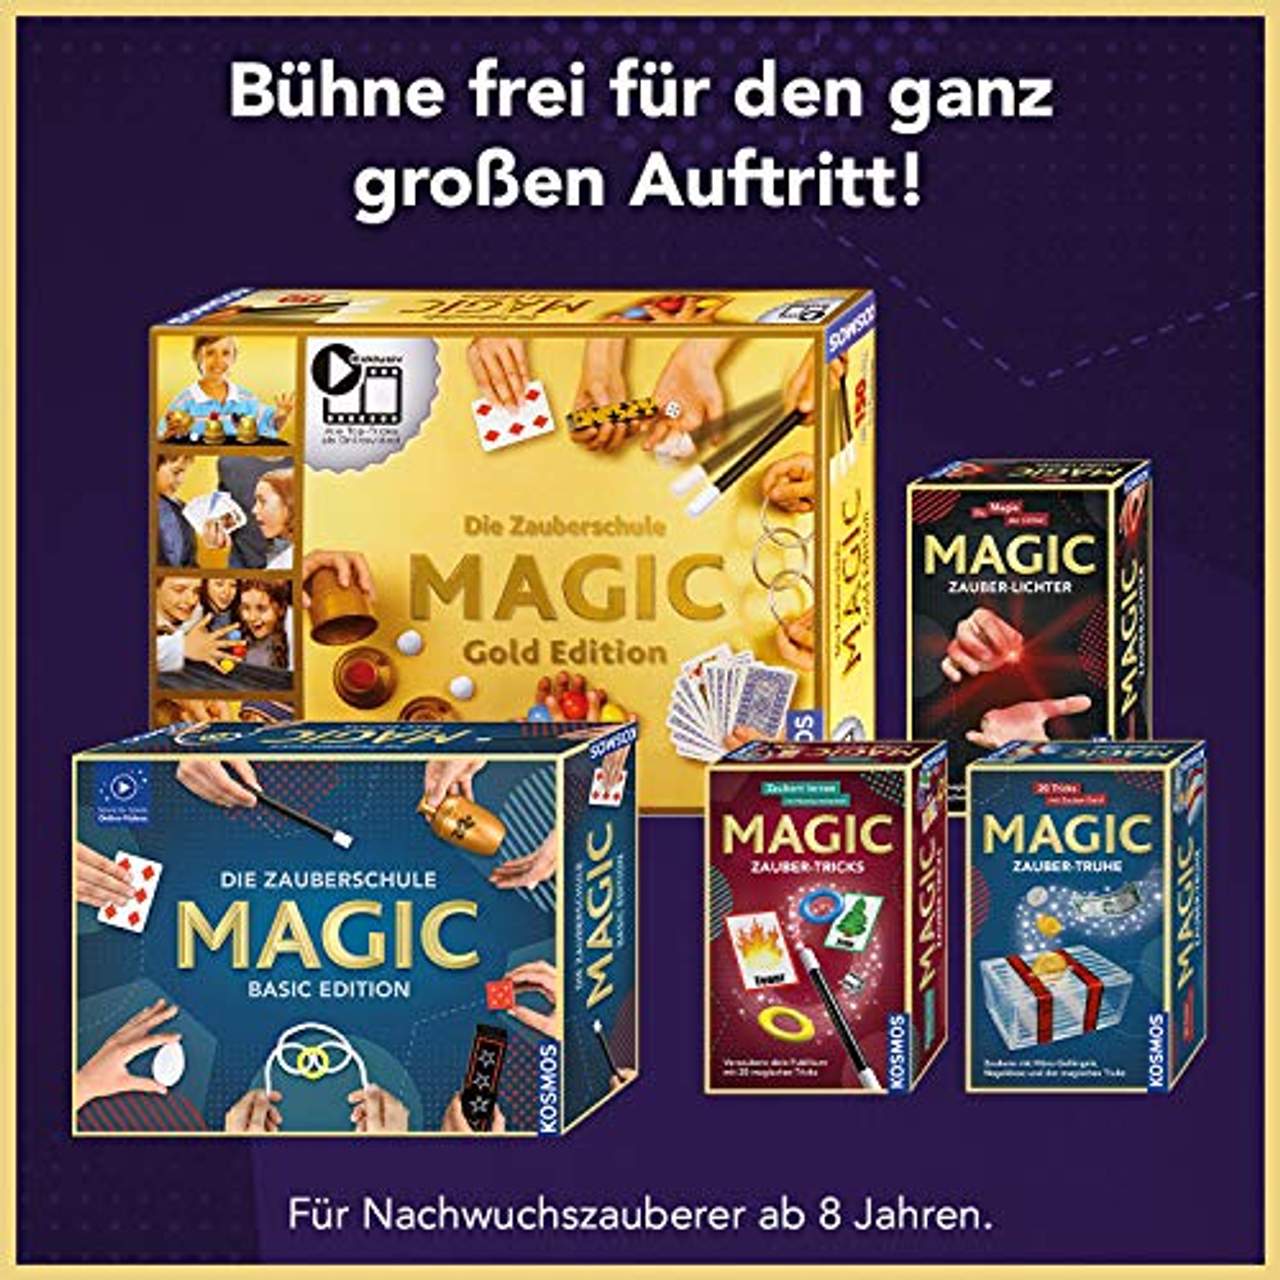 Kosmos  Zauberschule Magic Deluxe Plus